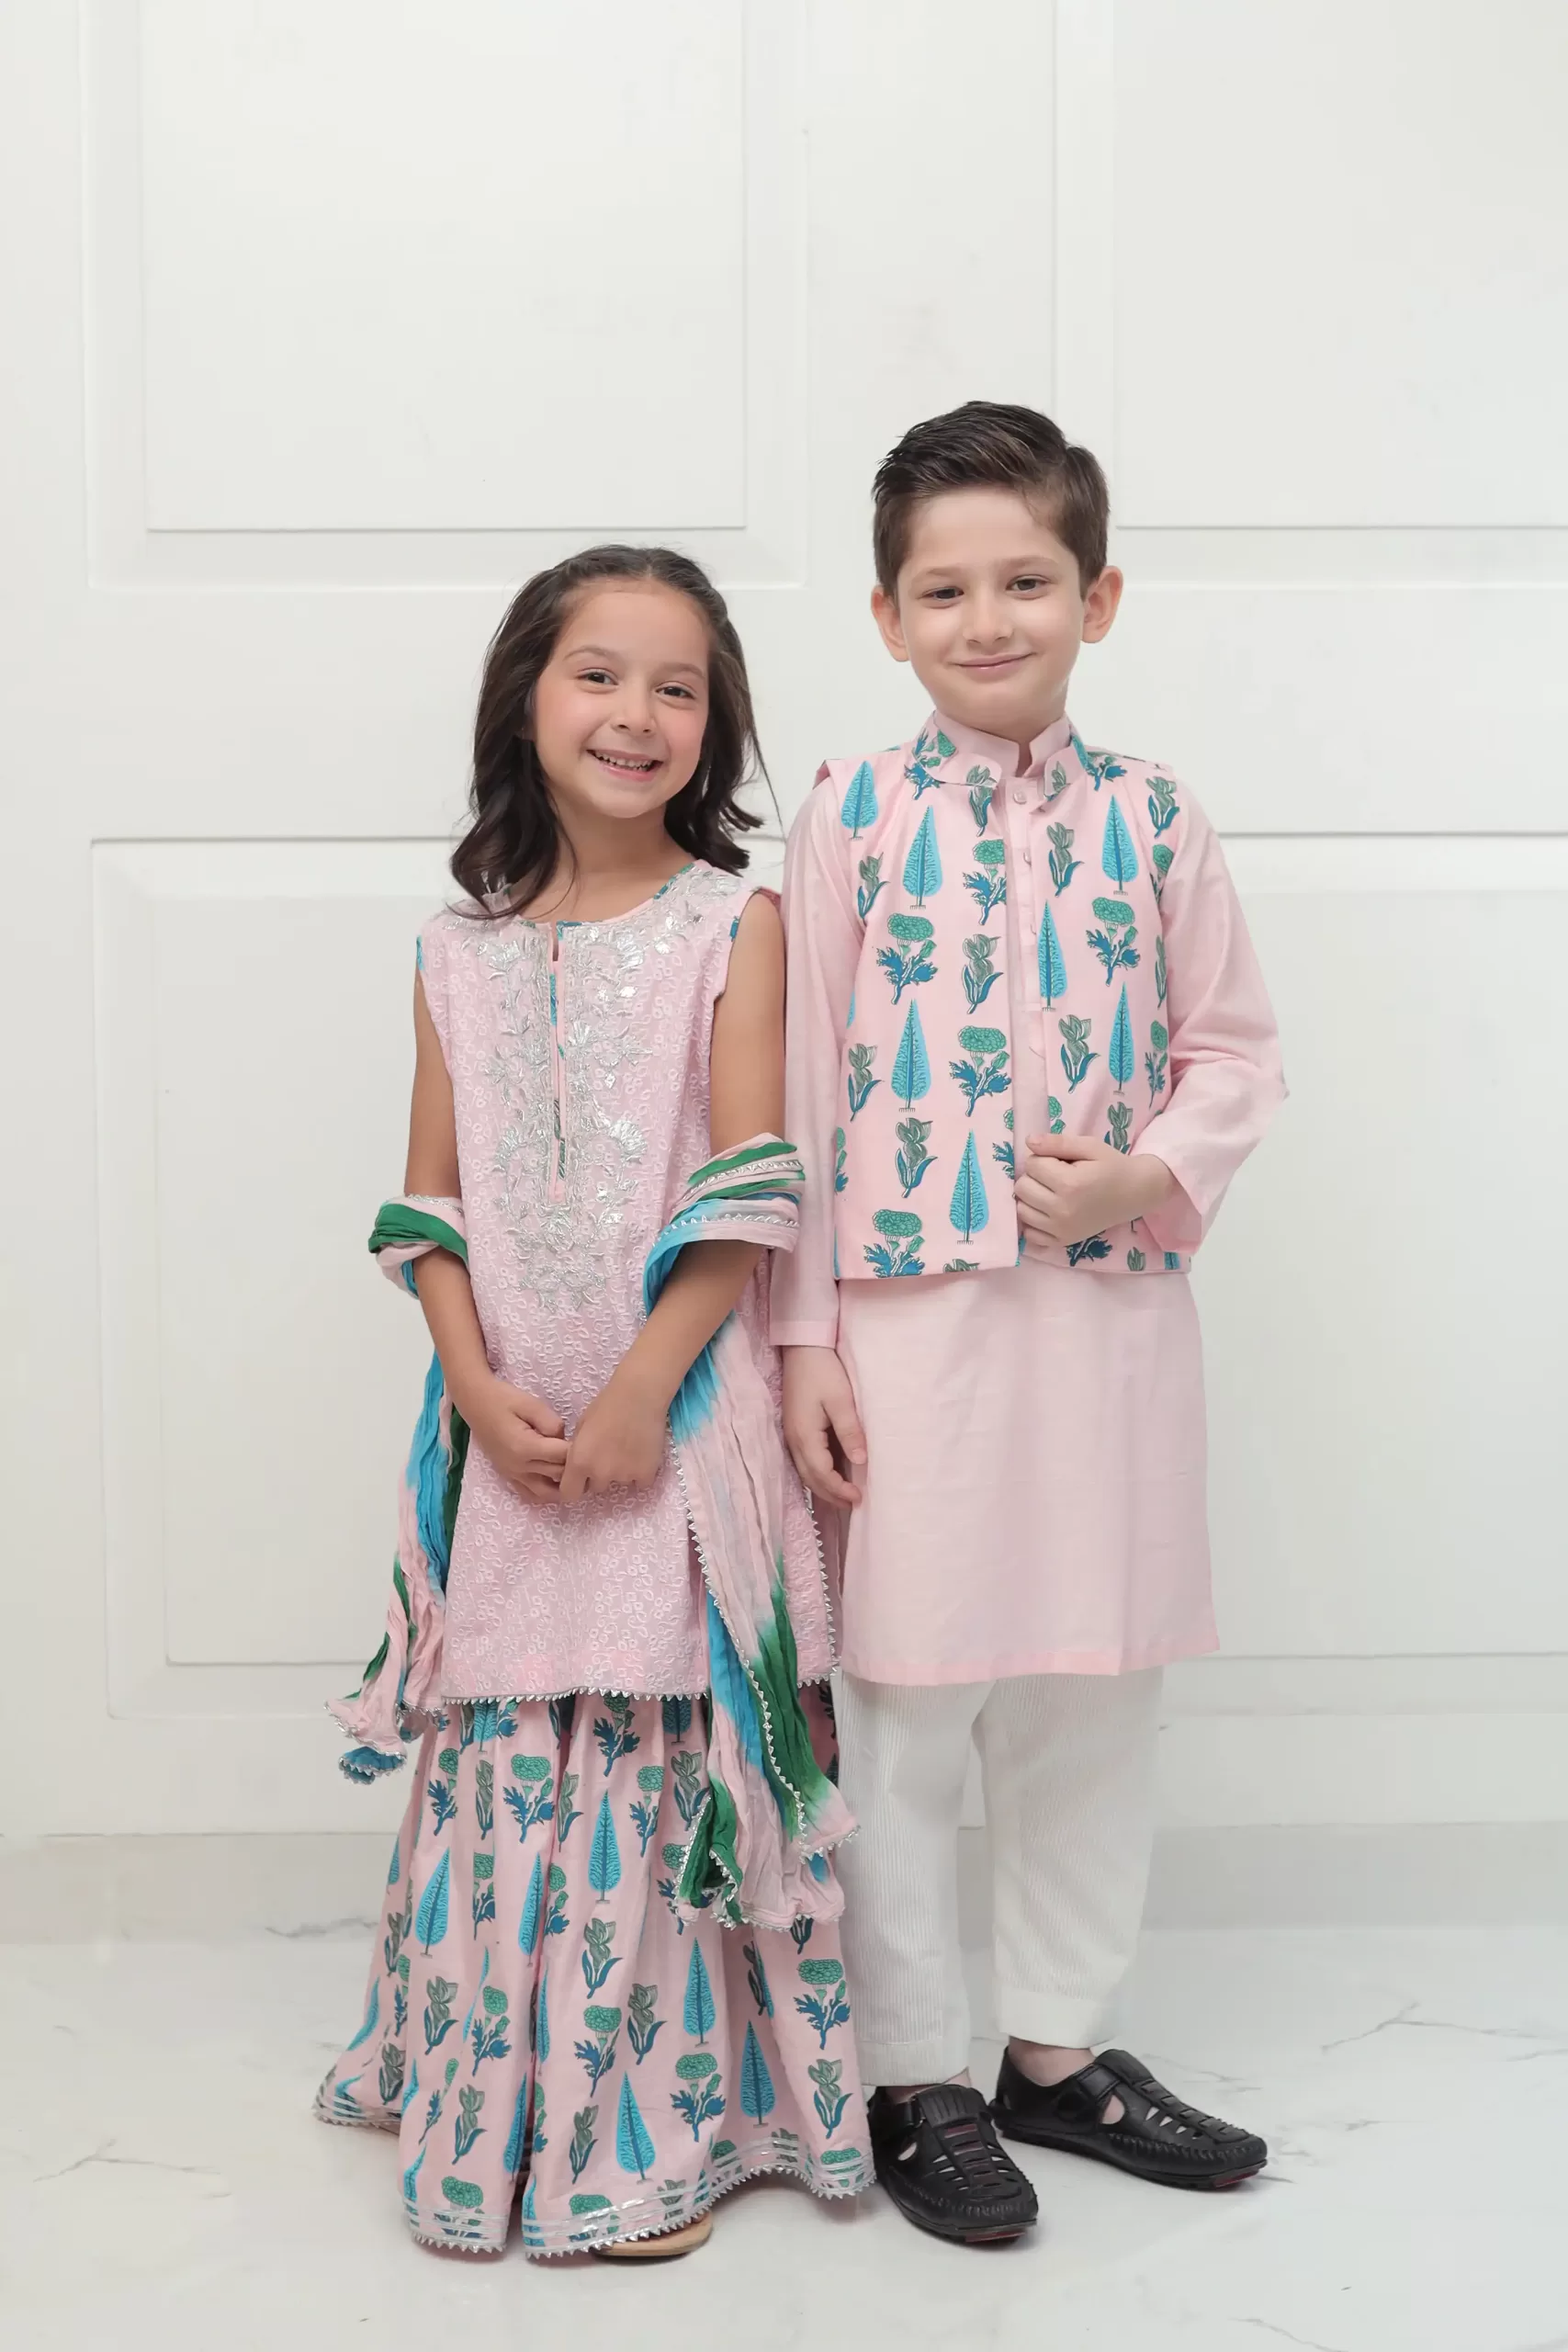 Pakistani Kids clothes in uk & usa - Shehrnaz - Kidswear Online